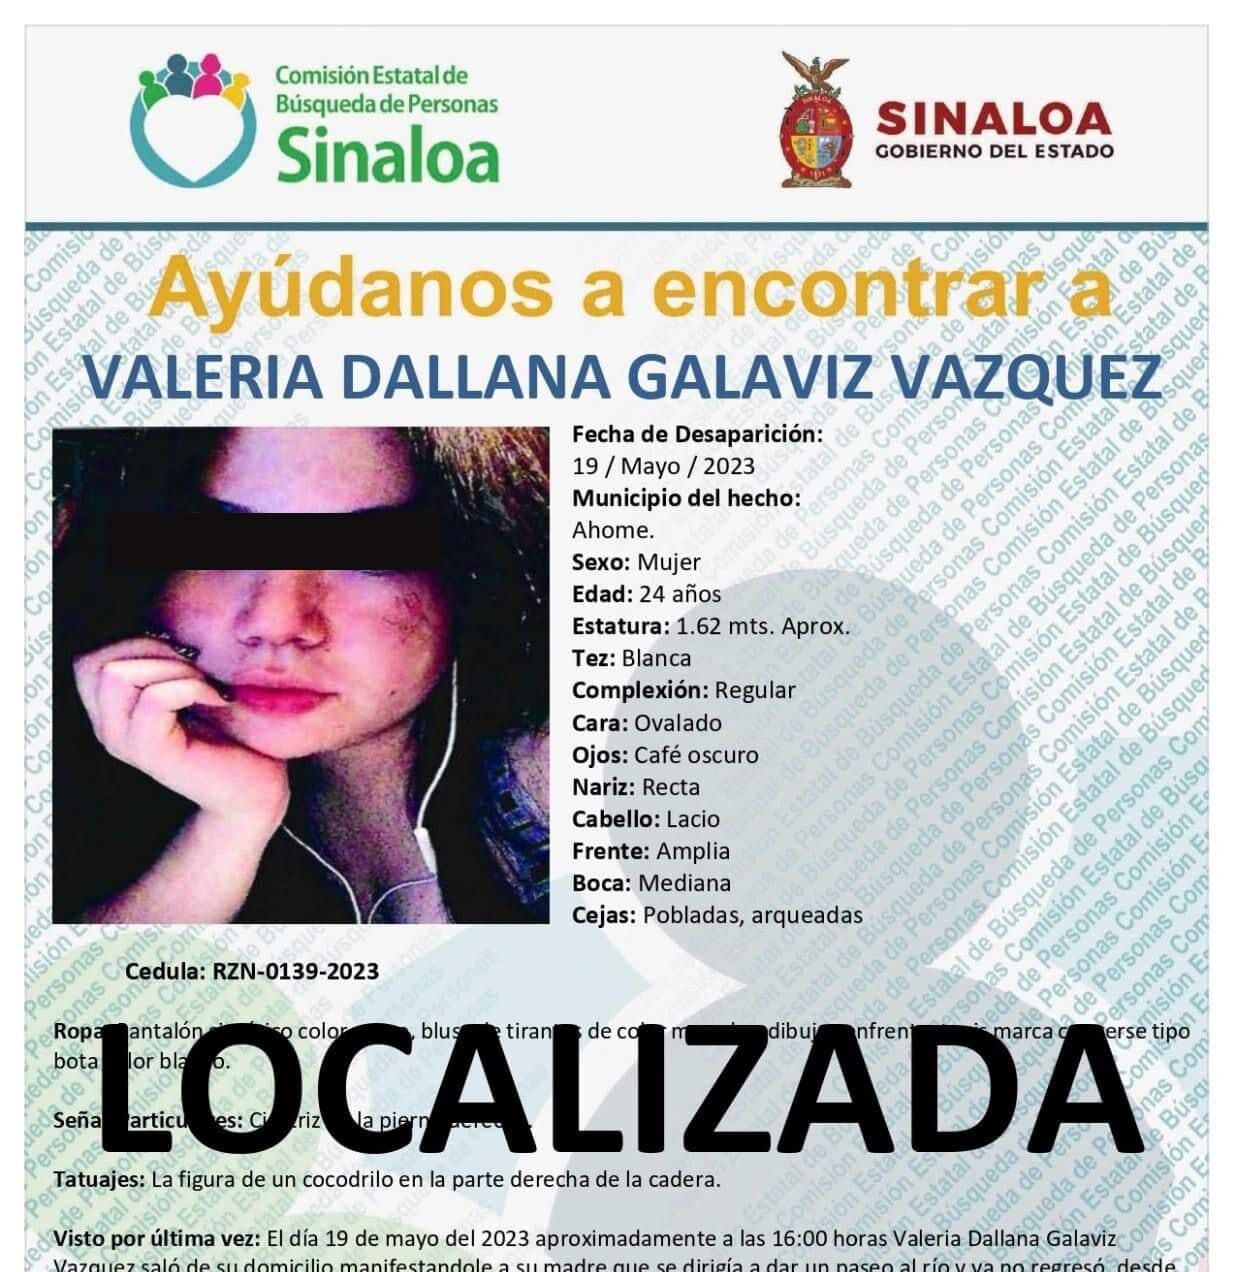 Valeria Dallana se encontraba desaparecida desde el 19 de mayo.